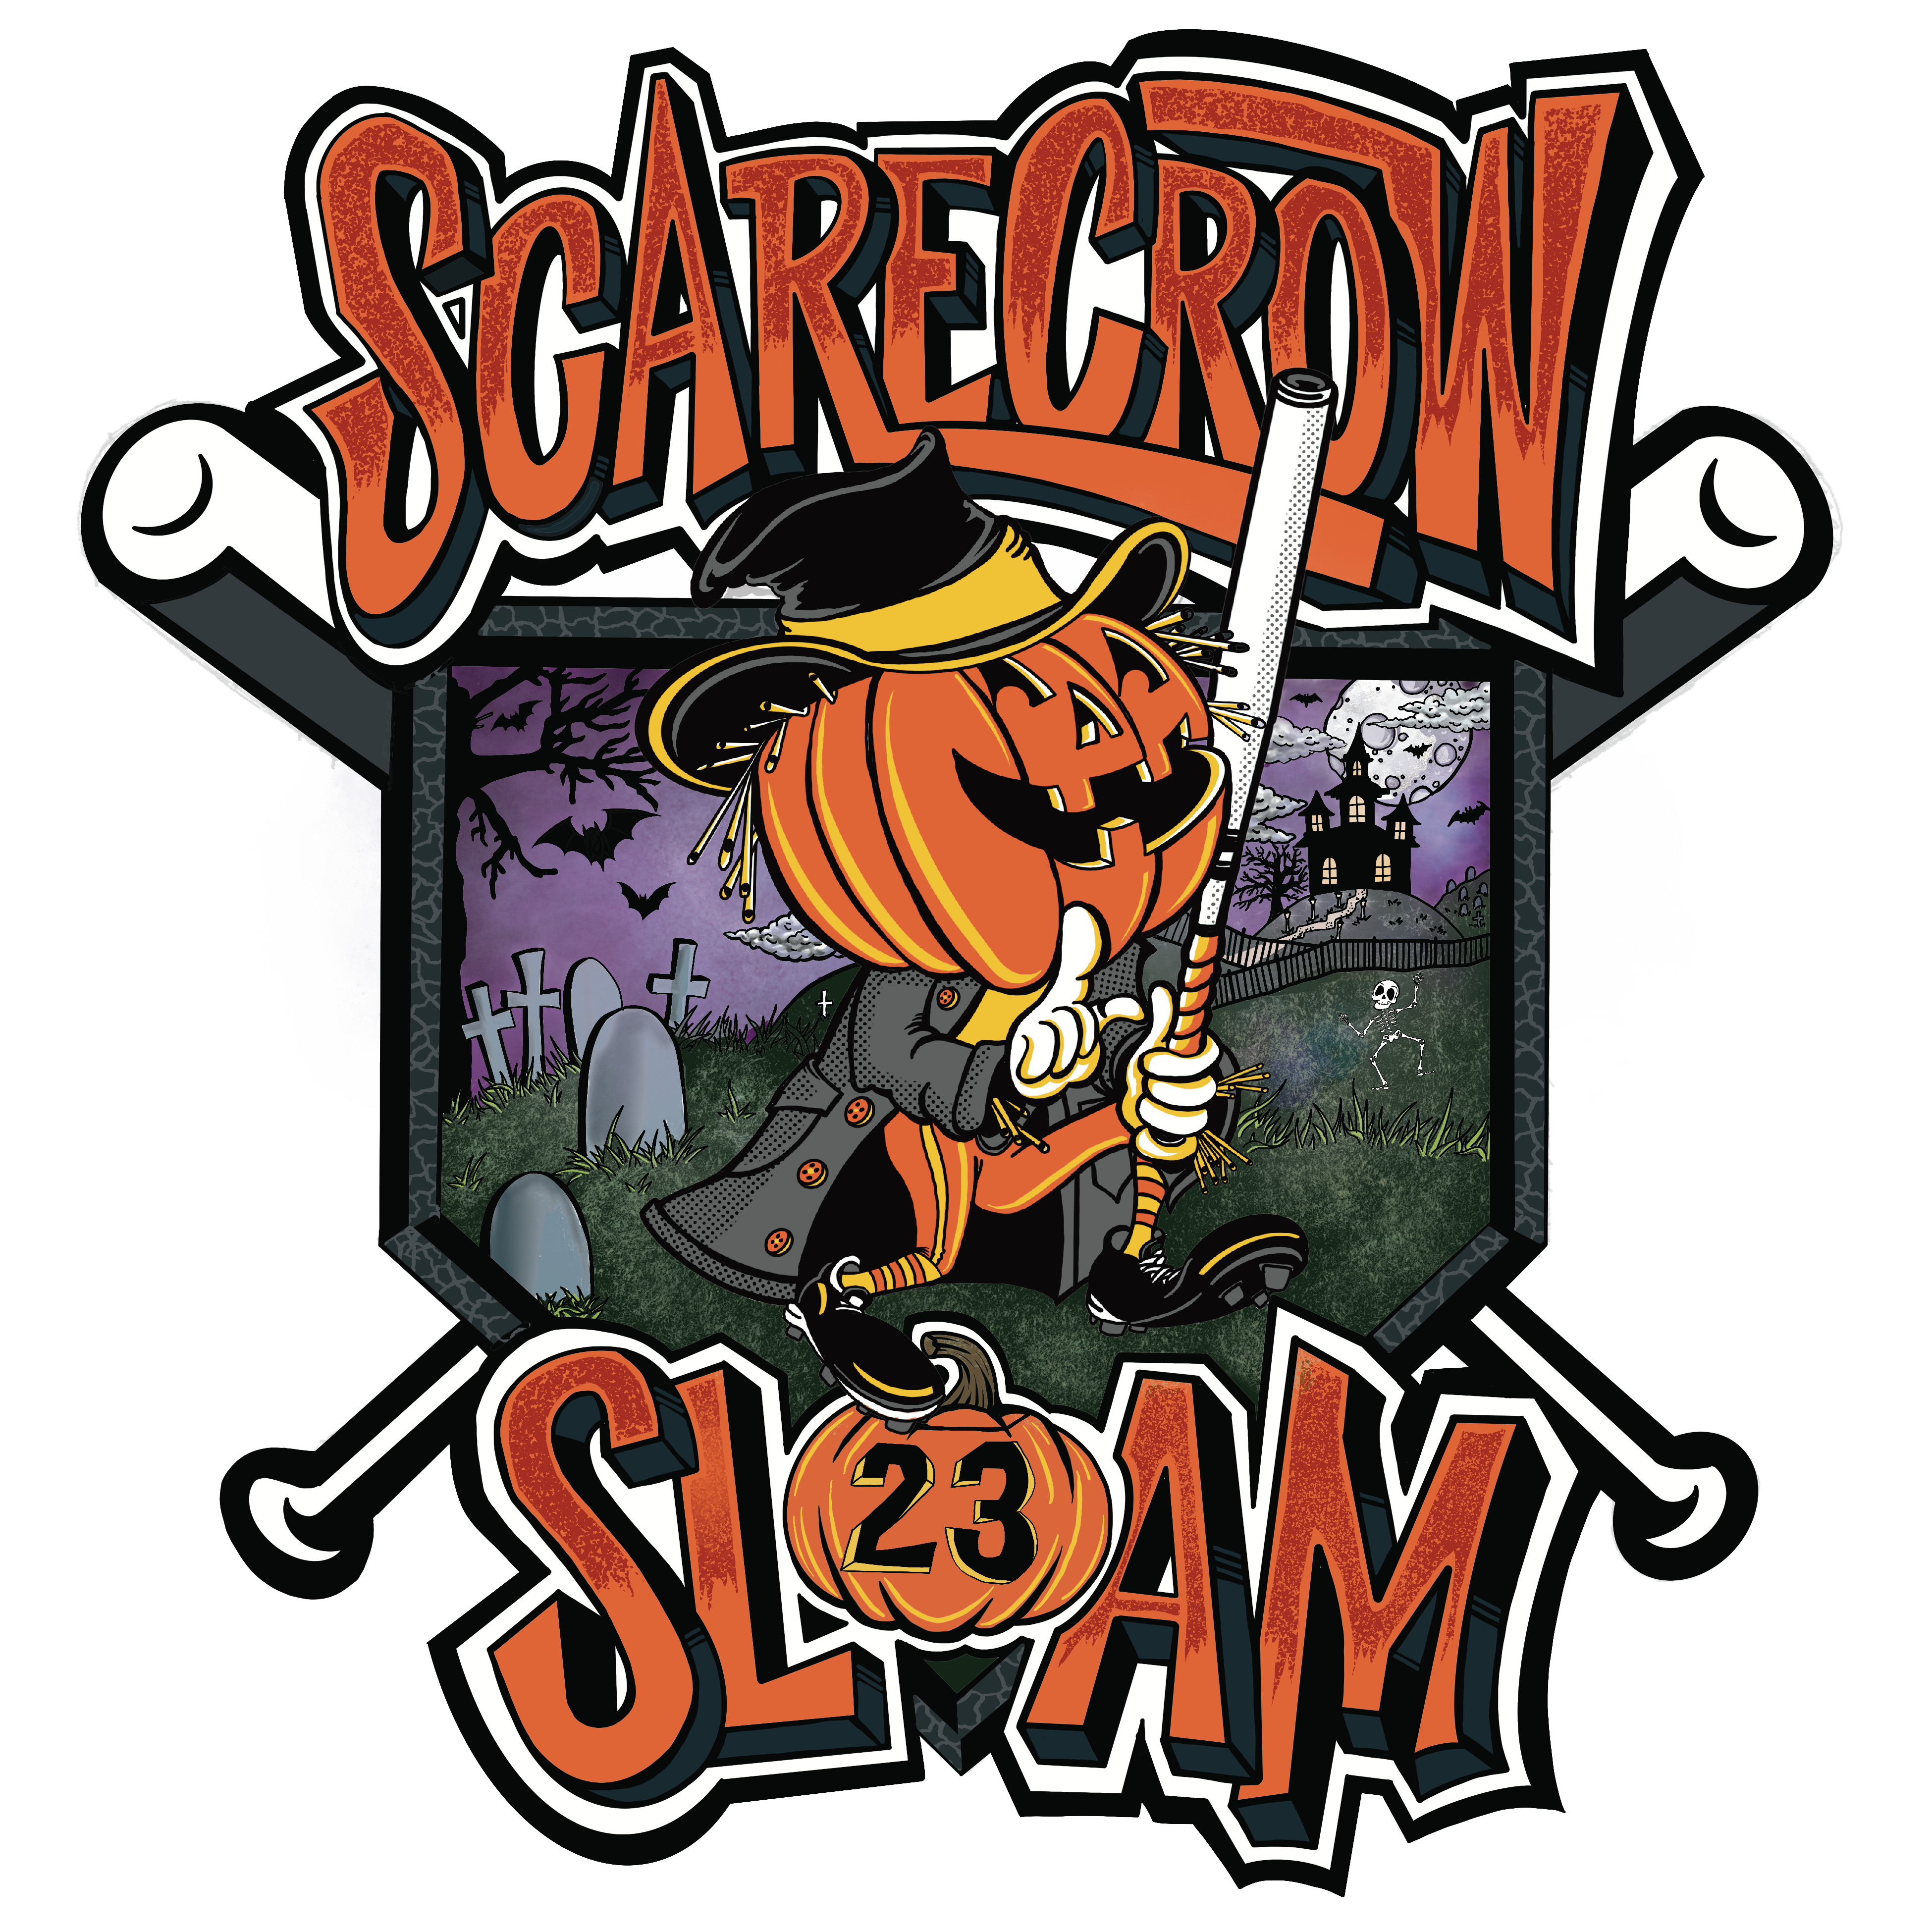 Scarecrow Slam